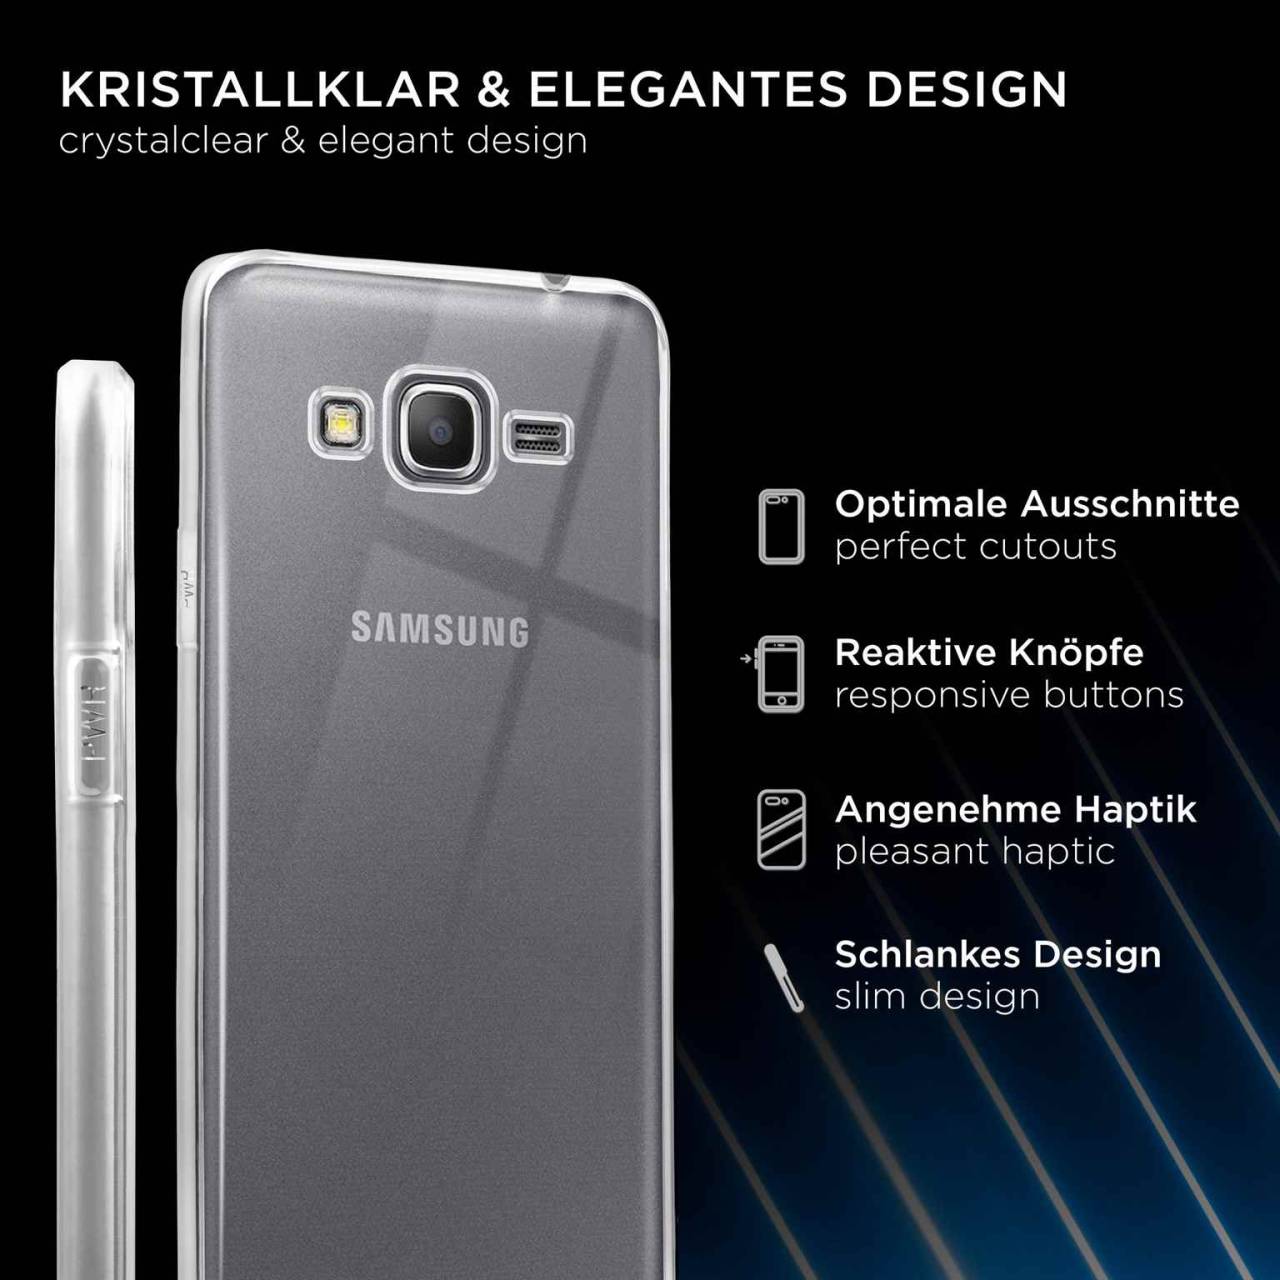 ONEFLOW Clear Case für Samsung Galaxy Grand Prime – Transparente Hülle aus Soft Silikon, Extrem schlank